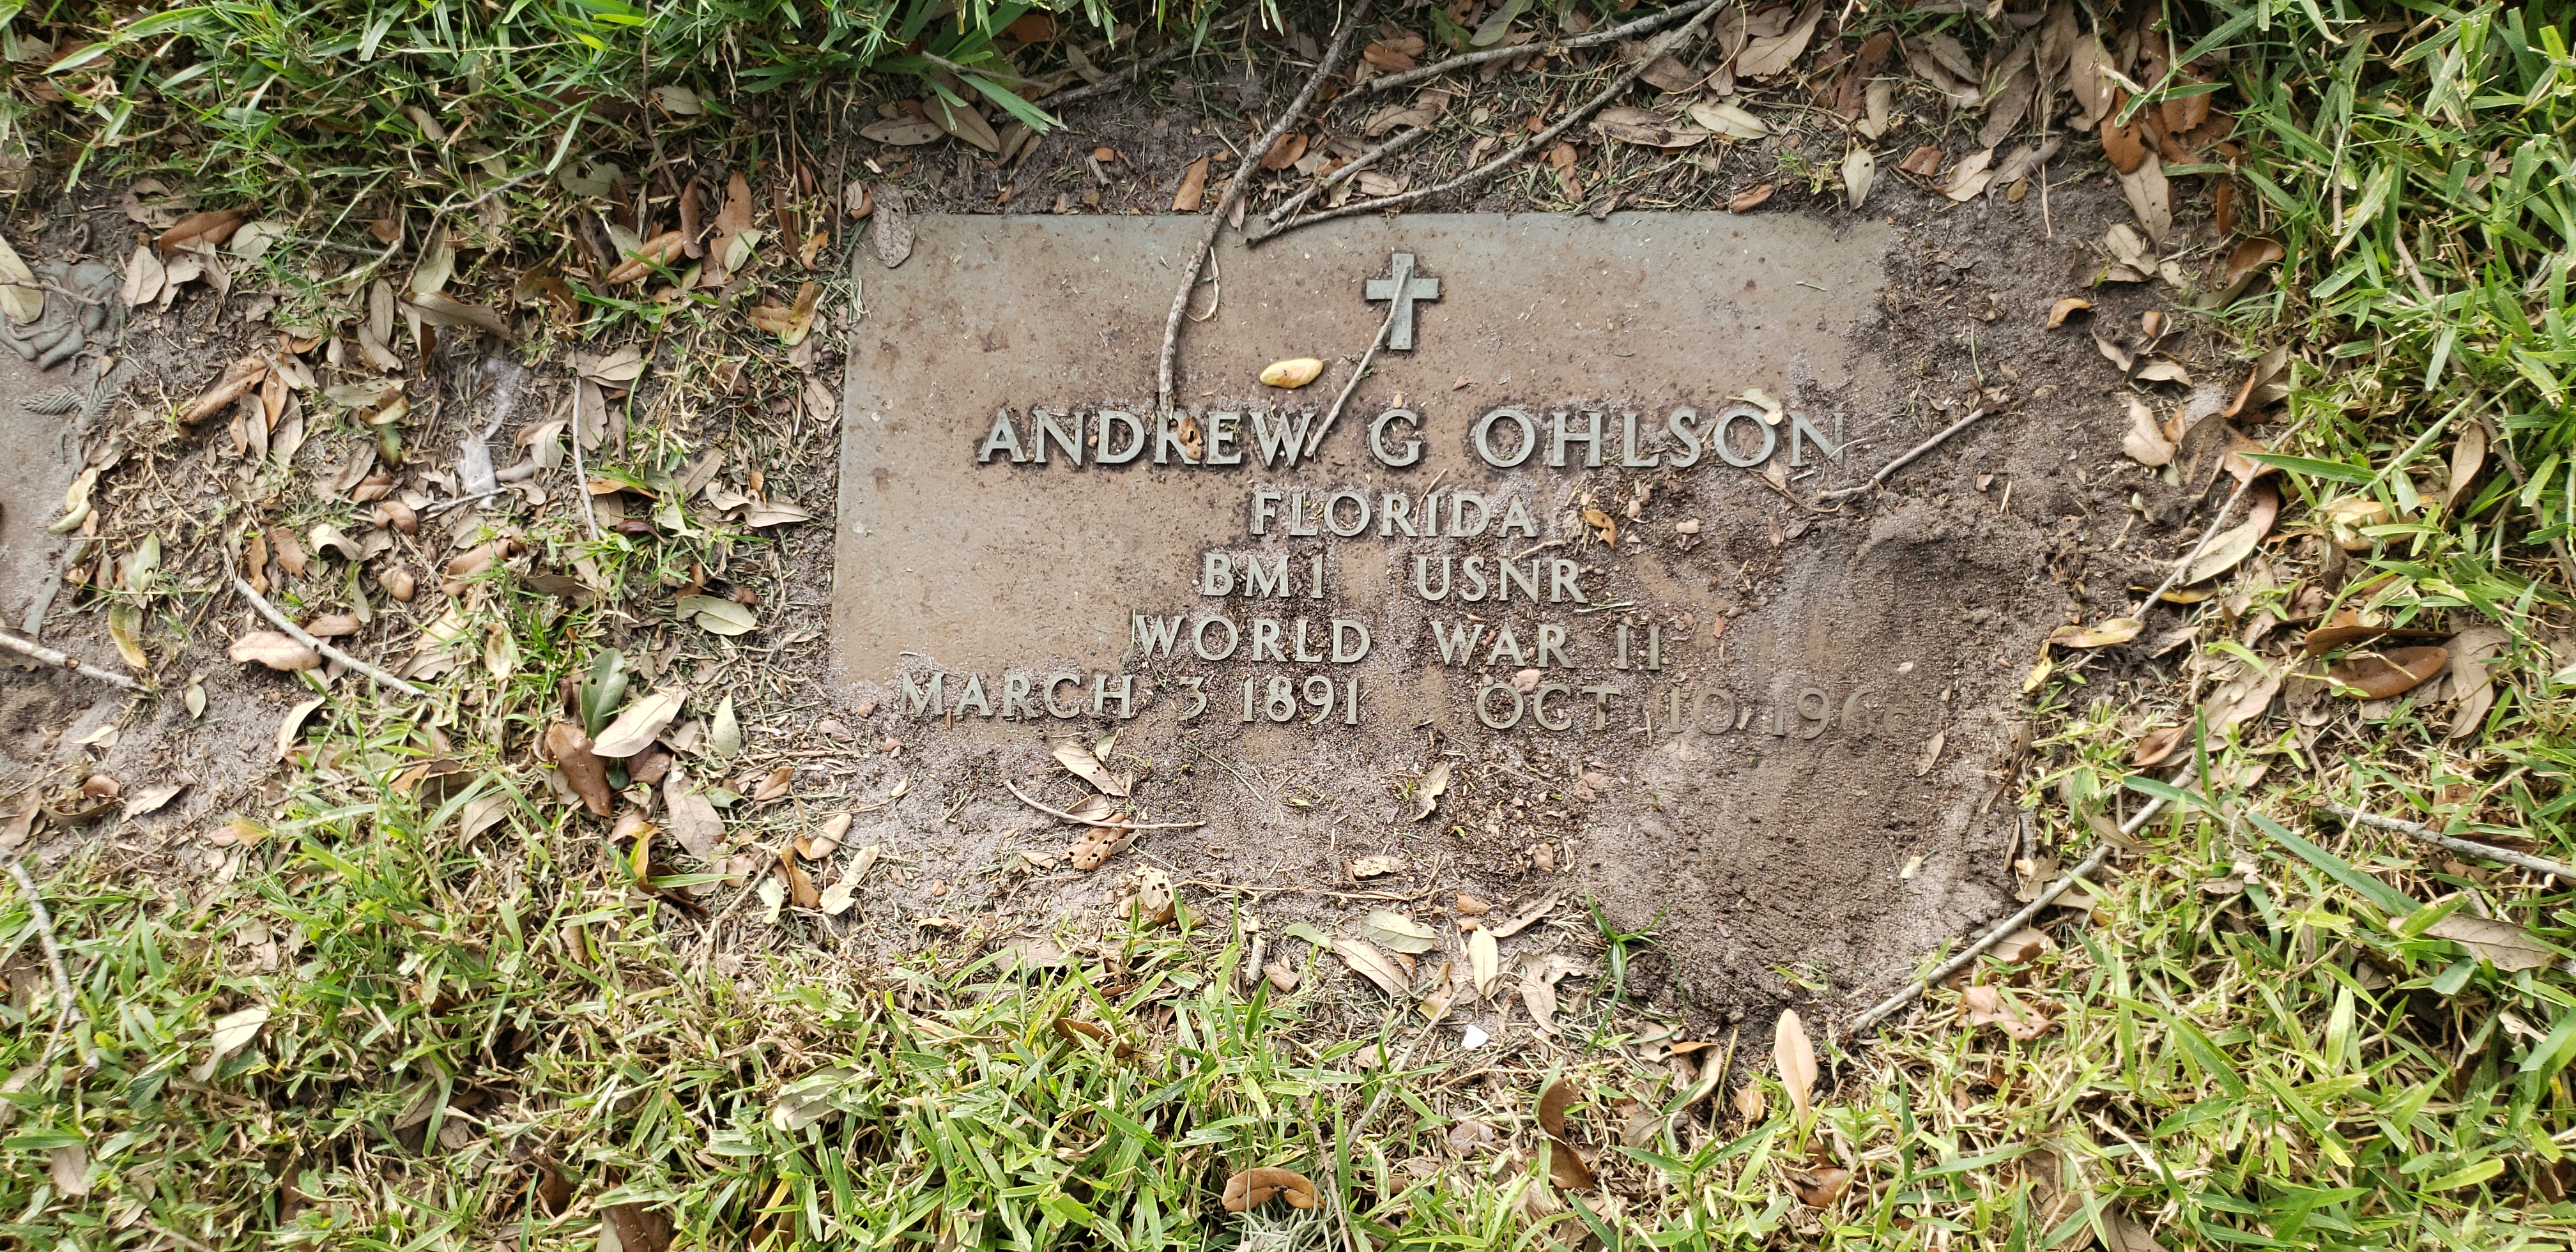 Andrew G Ohlson